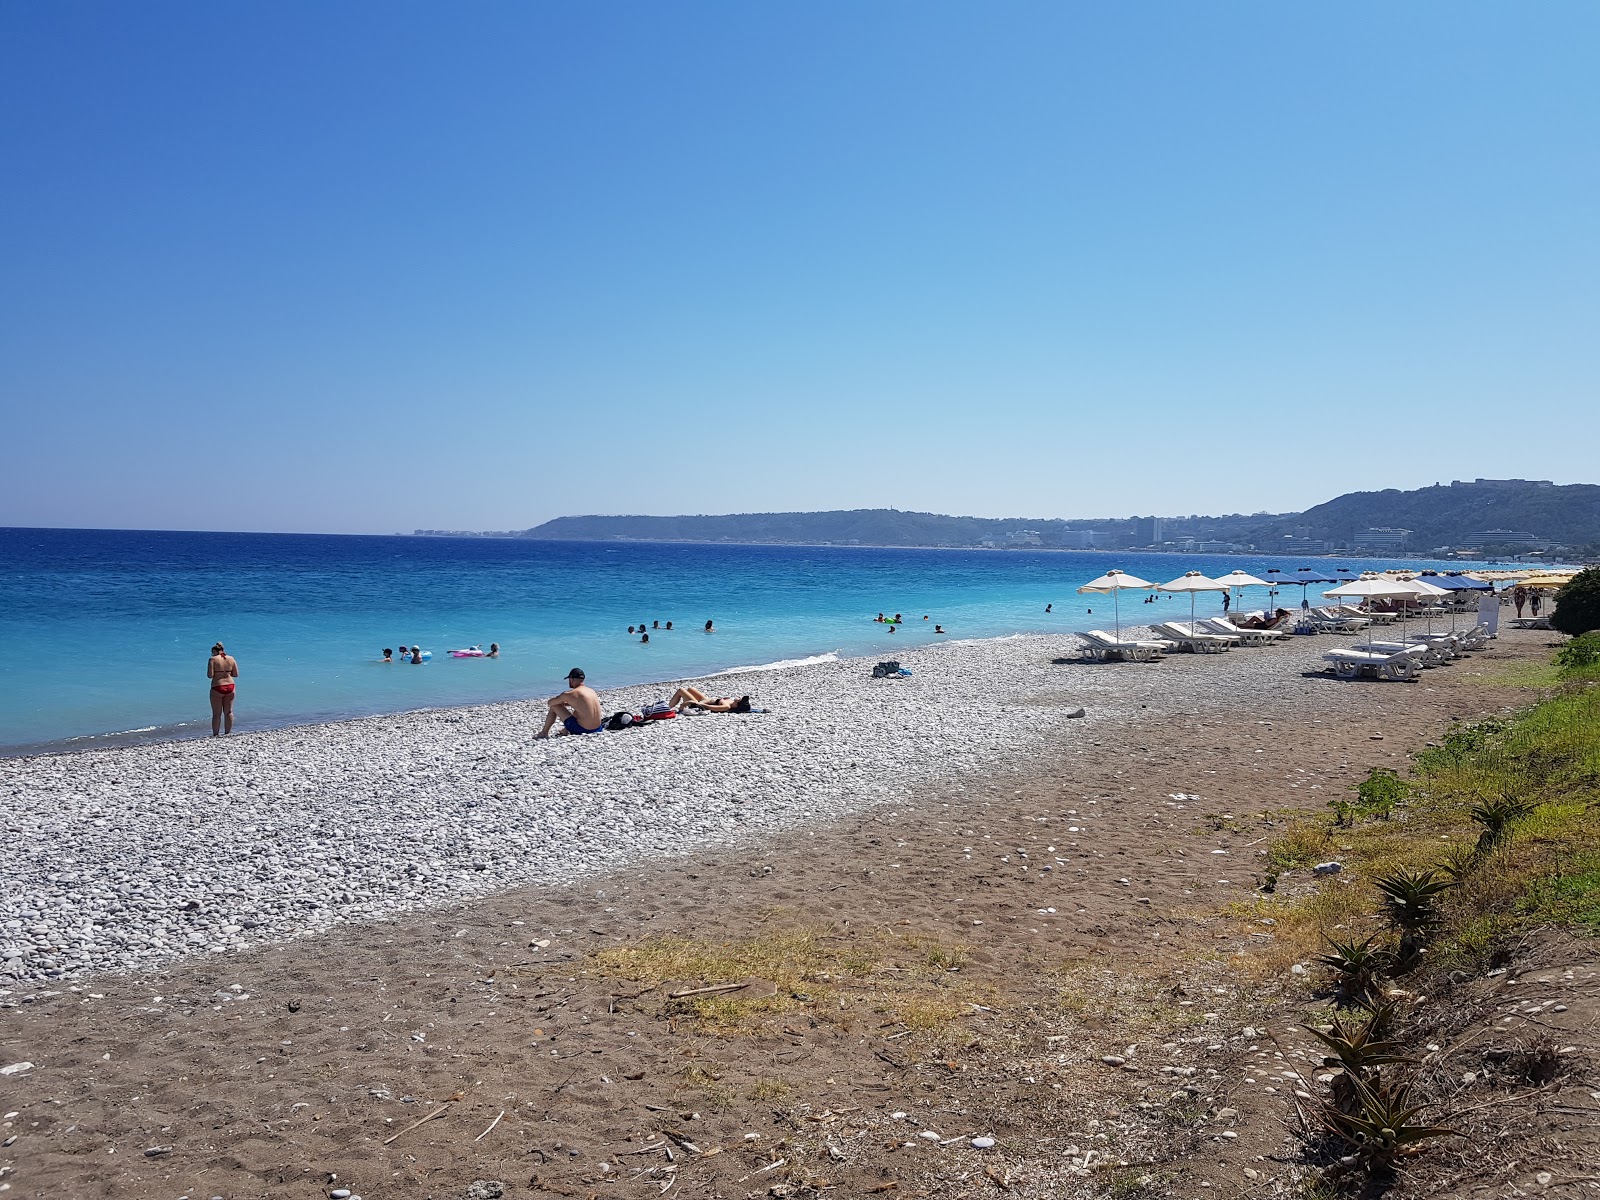 Ialysos Bay Beach'in fotoğrafı geniş plaj ile birlikte